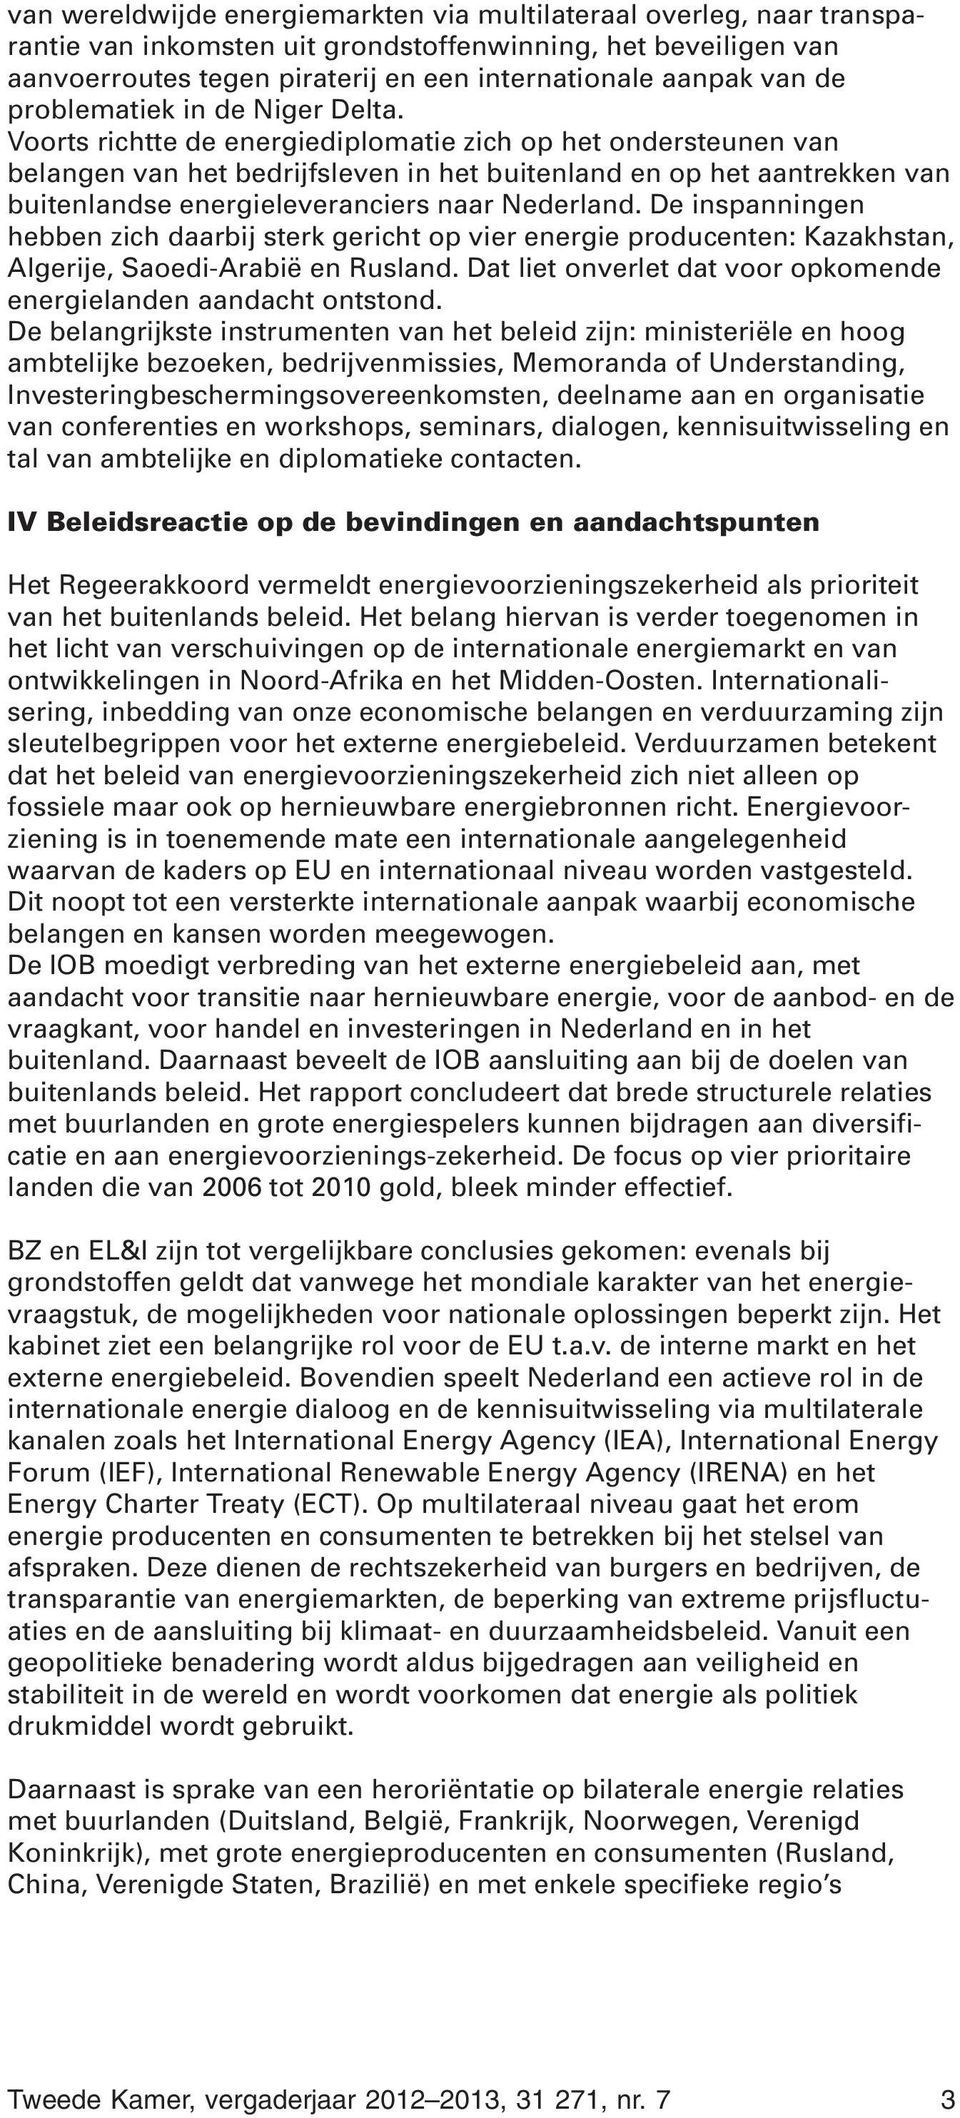 Voorts richtte de energiediplomatie zich op het ondersteunen van belangen van het bedrijfsleven in het buitenland en op het aantrekken van buitenlandse energieleveranciers naar Nederland.